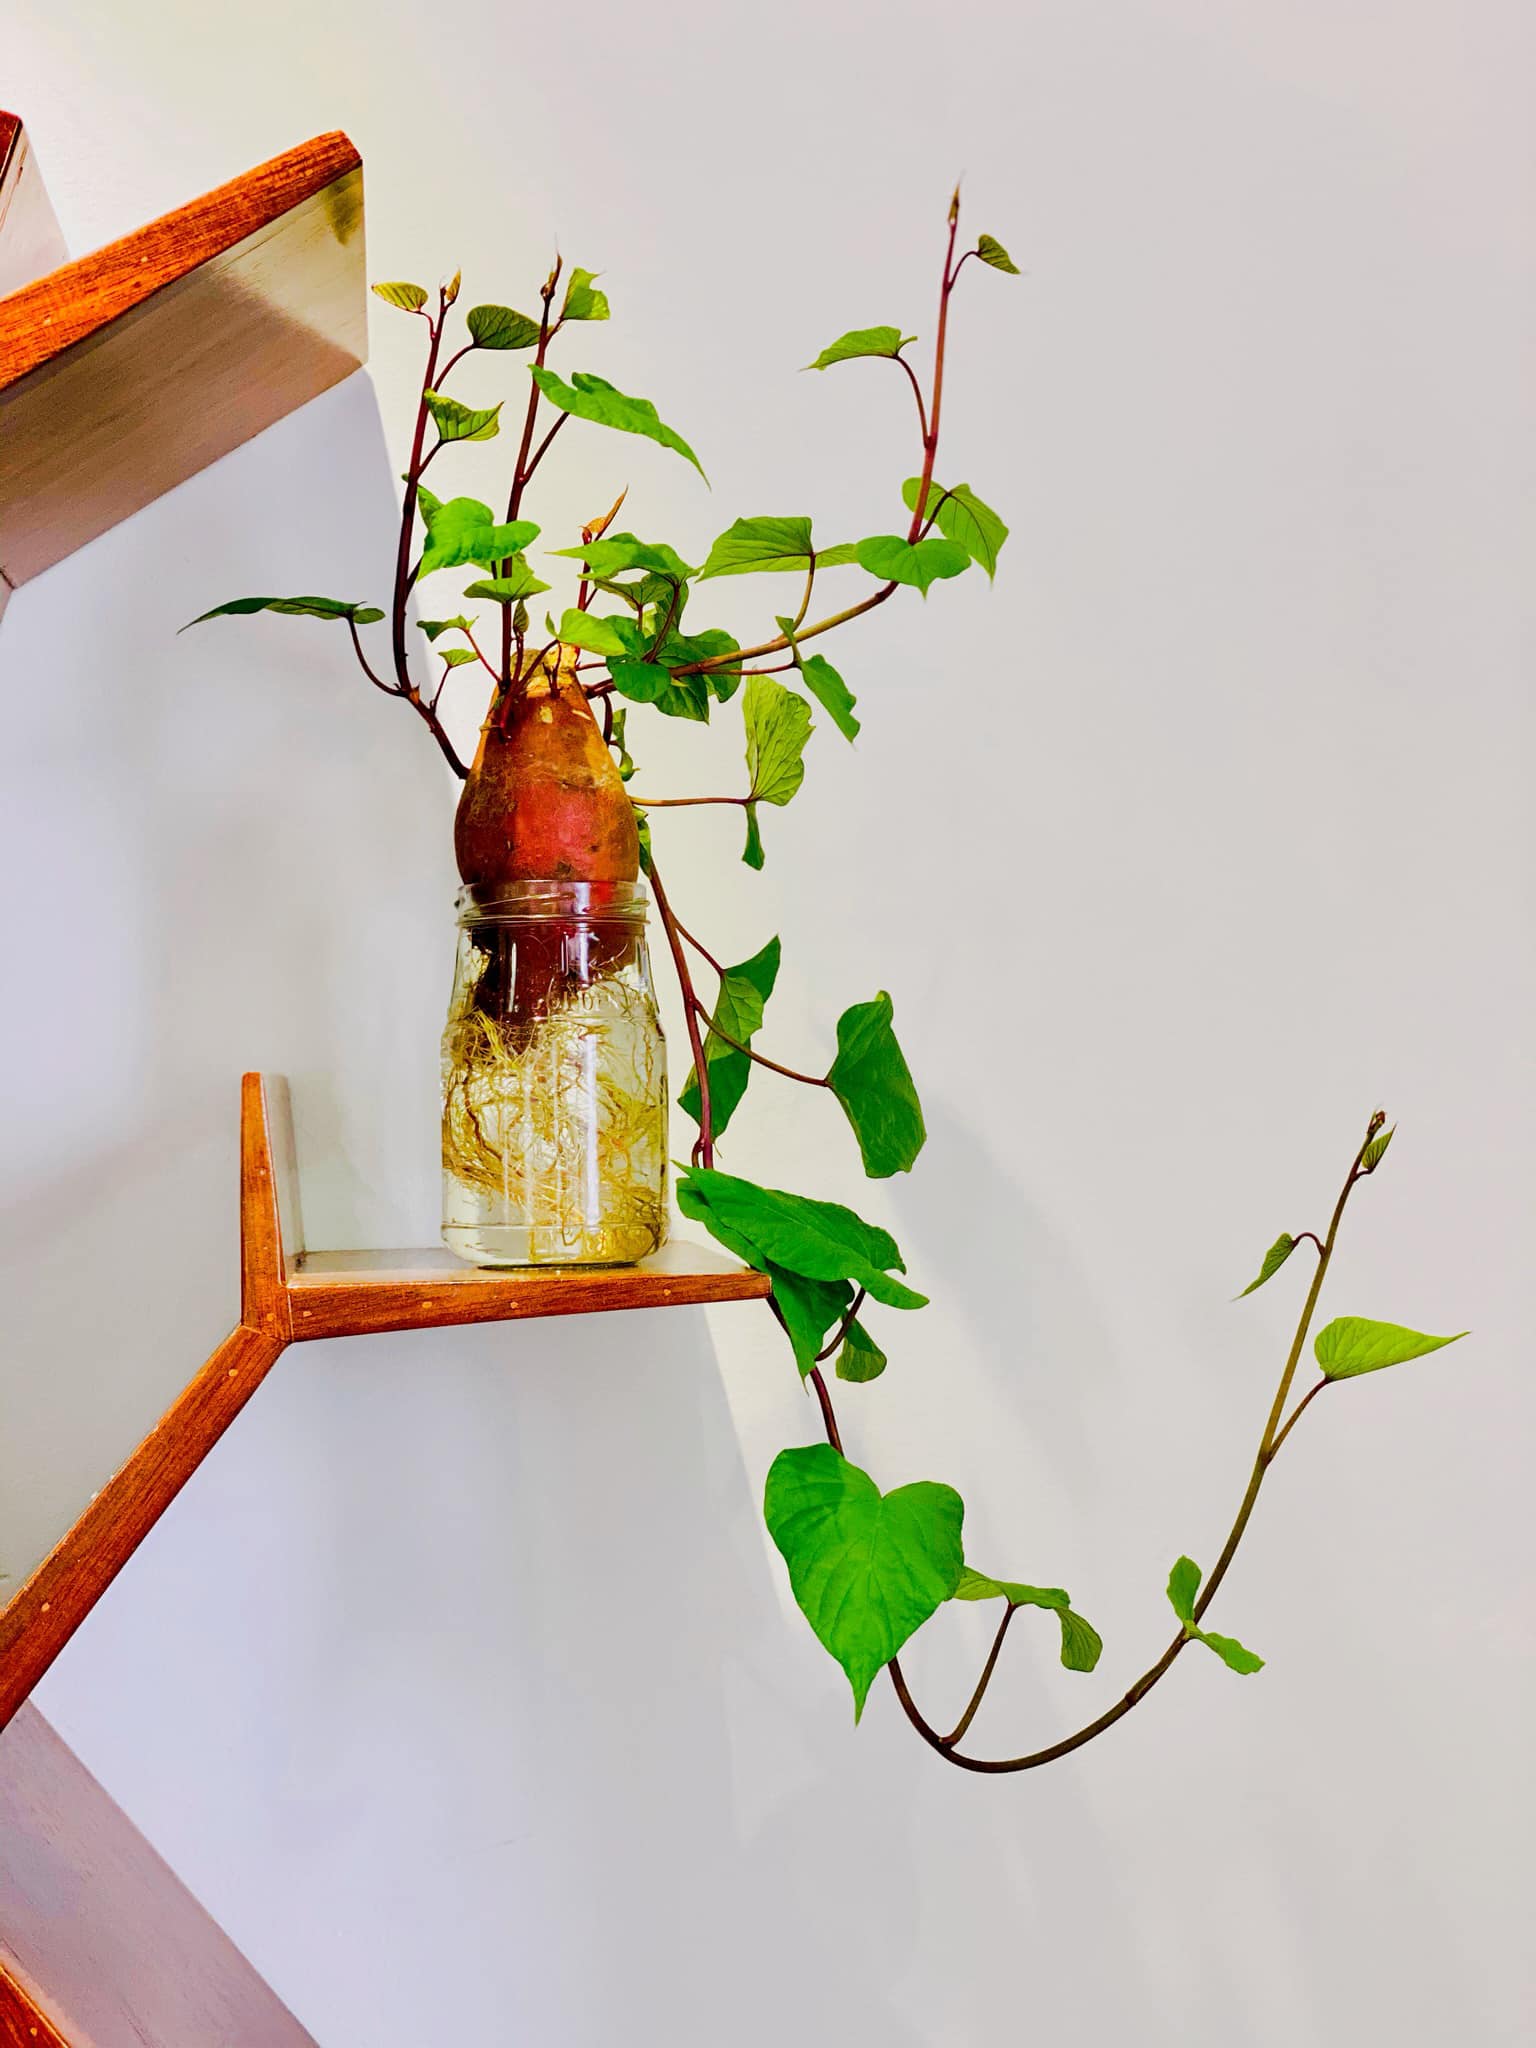 Trồng khoai lang bonsai làm đẹp nhà với các bước dễ vô cùng mà nói ra ai cũng sẽ làm được - Ảnh 3.